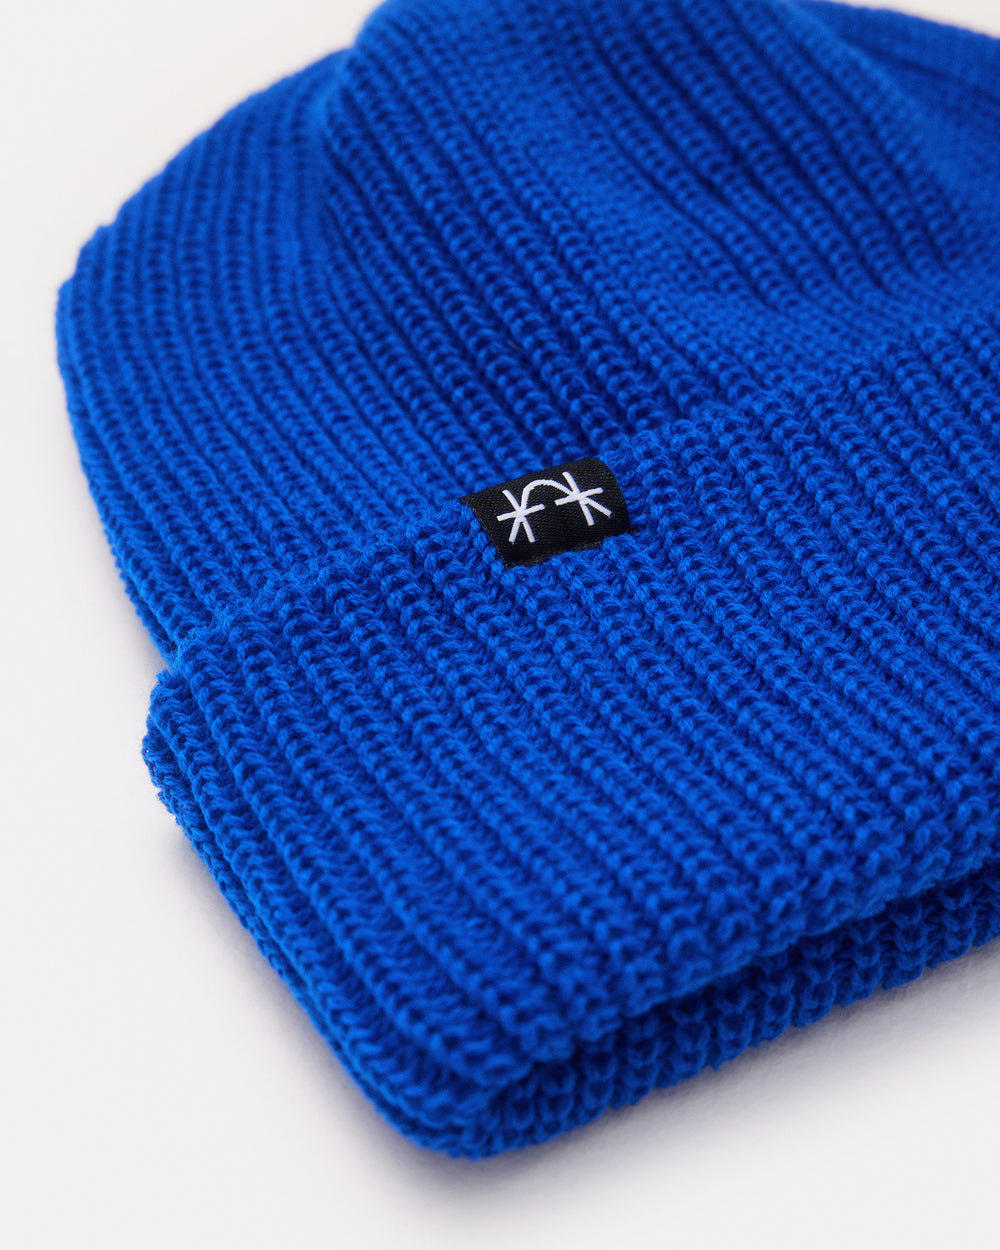 Tuque bleue tricotée côtelée